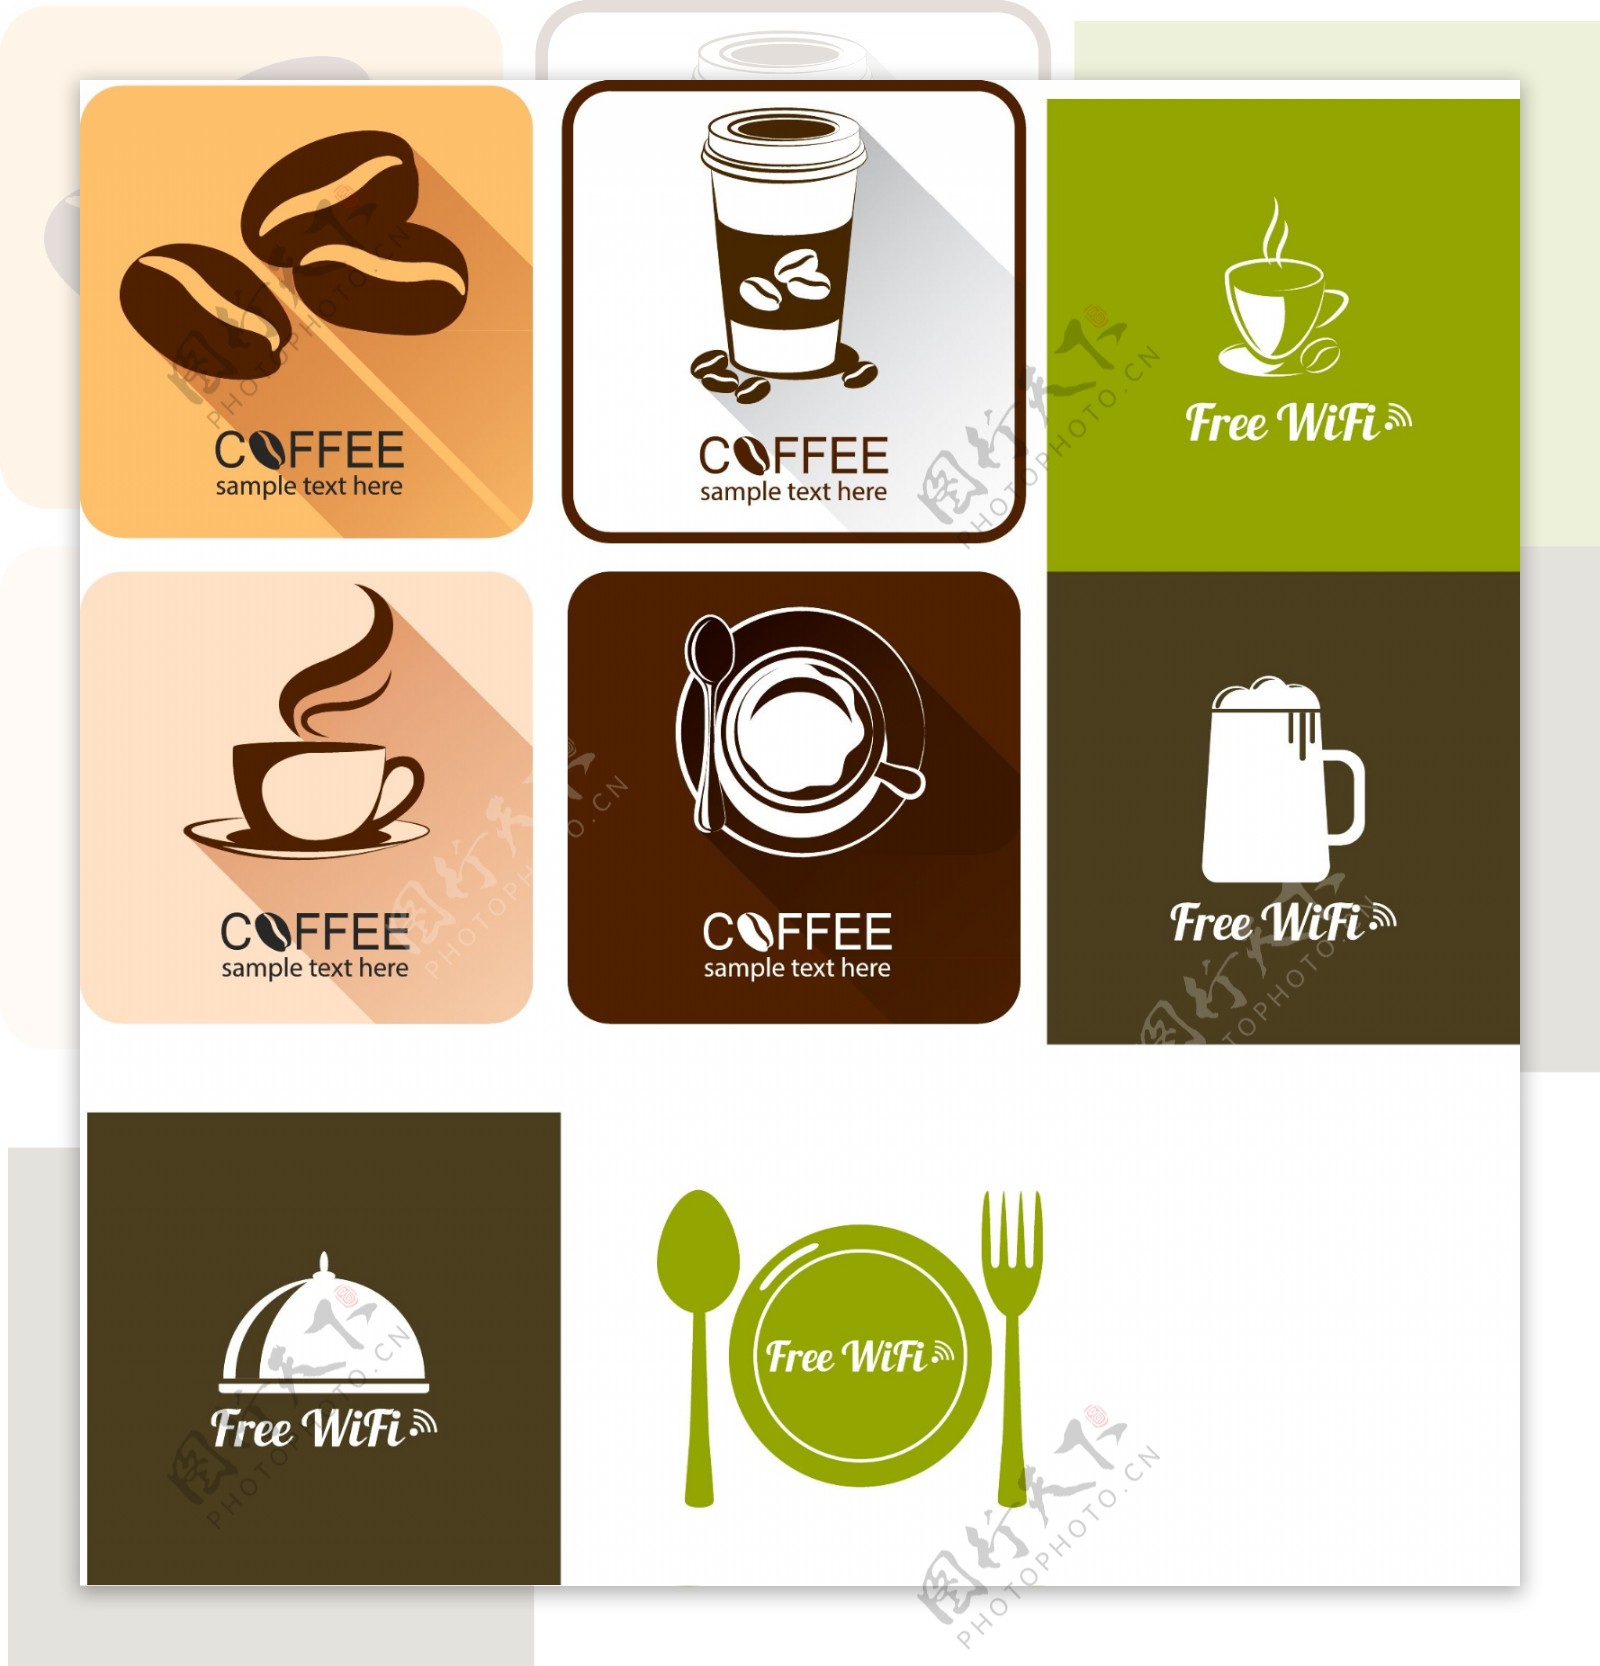 扁平化咖啡餐具图标